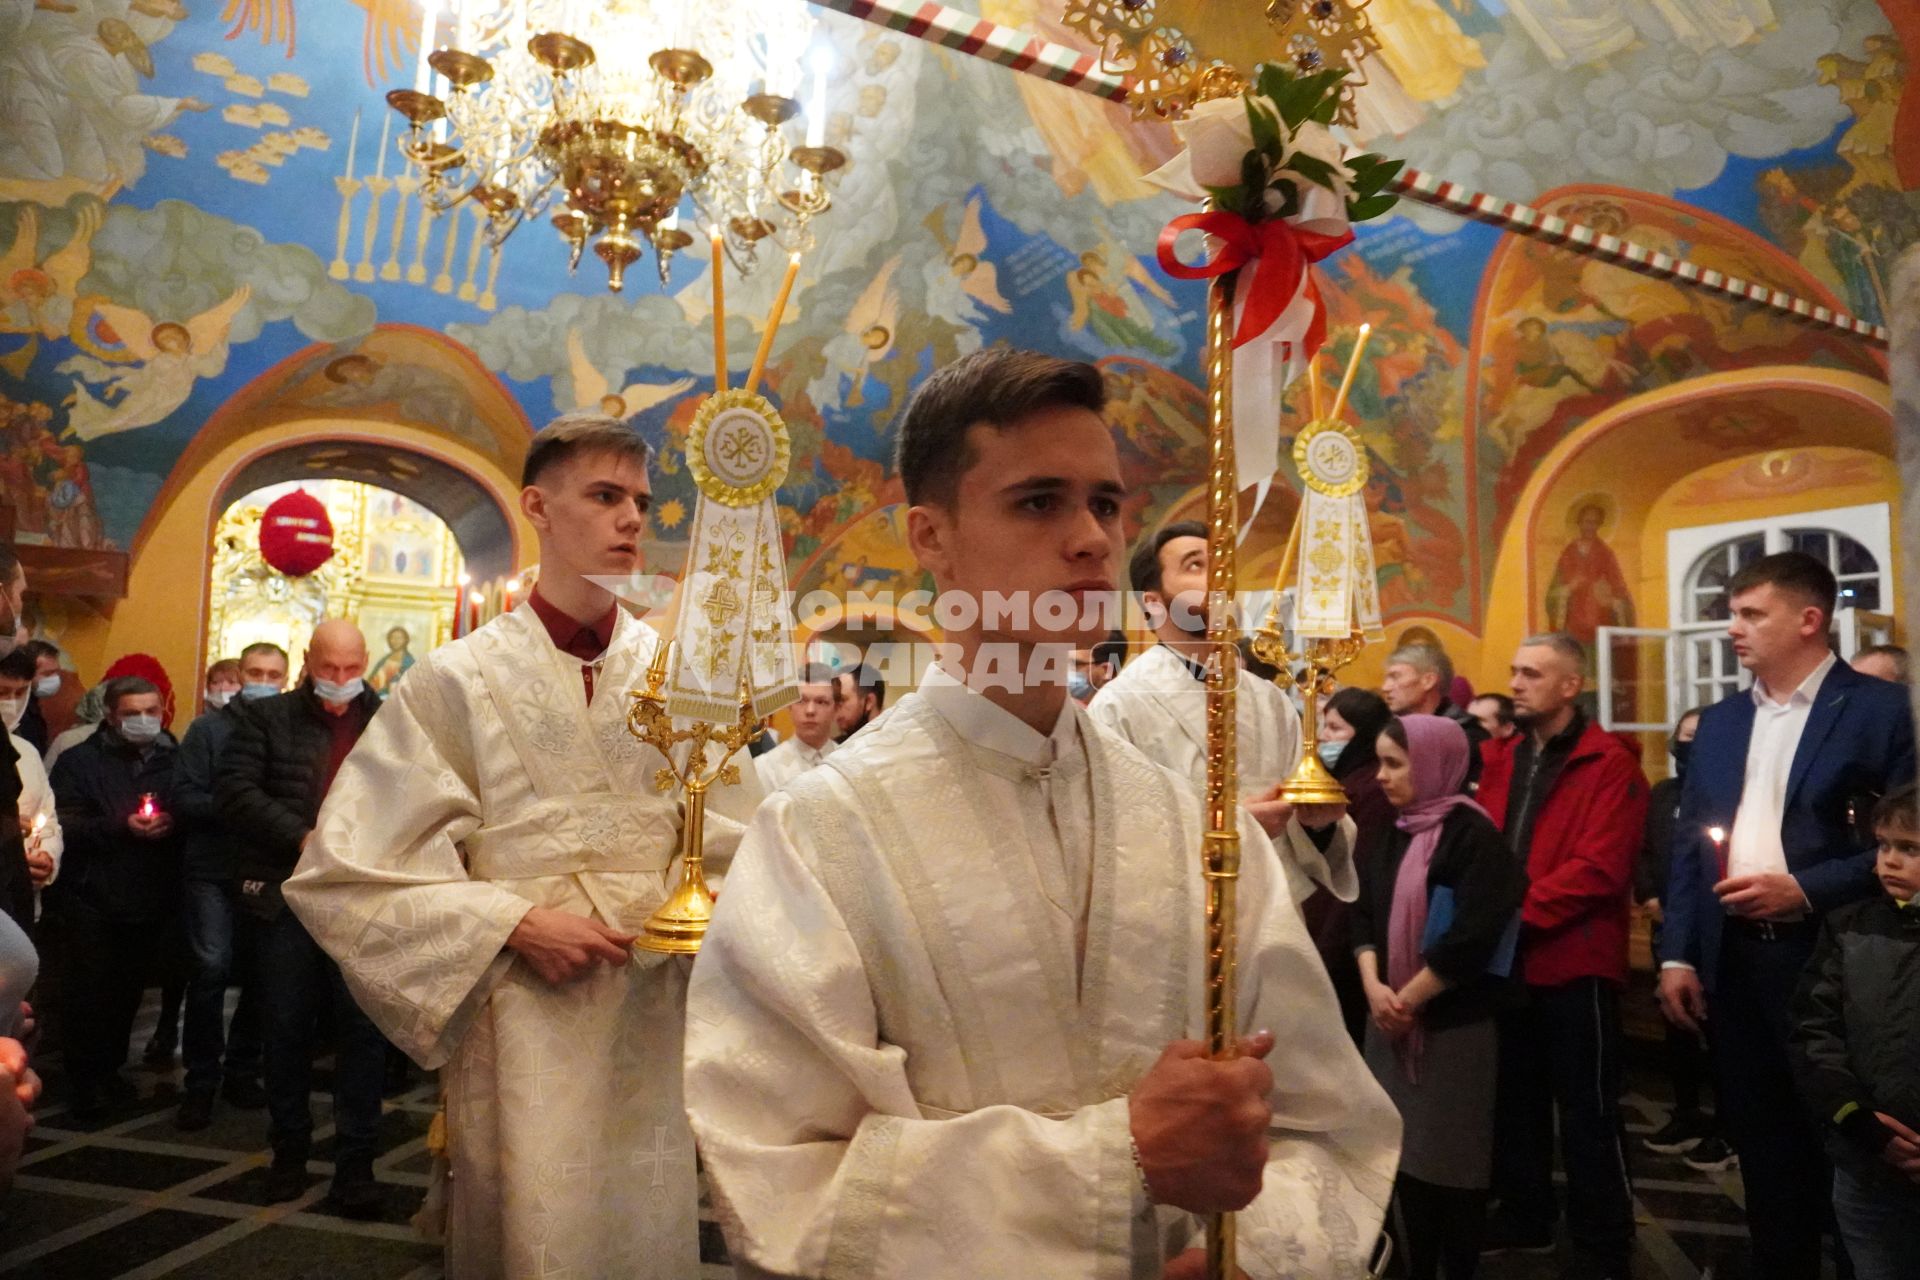 Иркутск. Священнослужители во время пасхальной службы в храме.